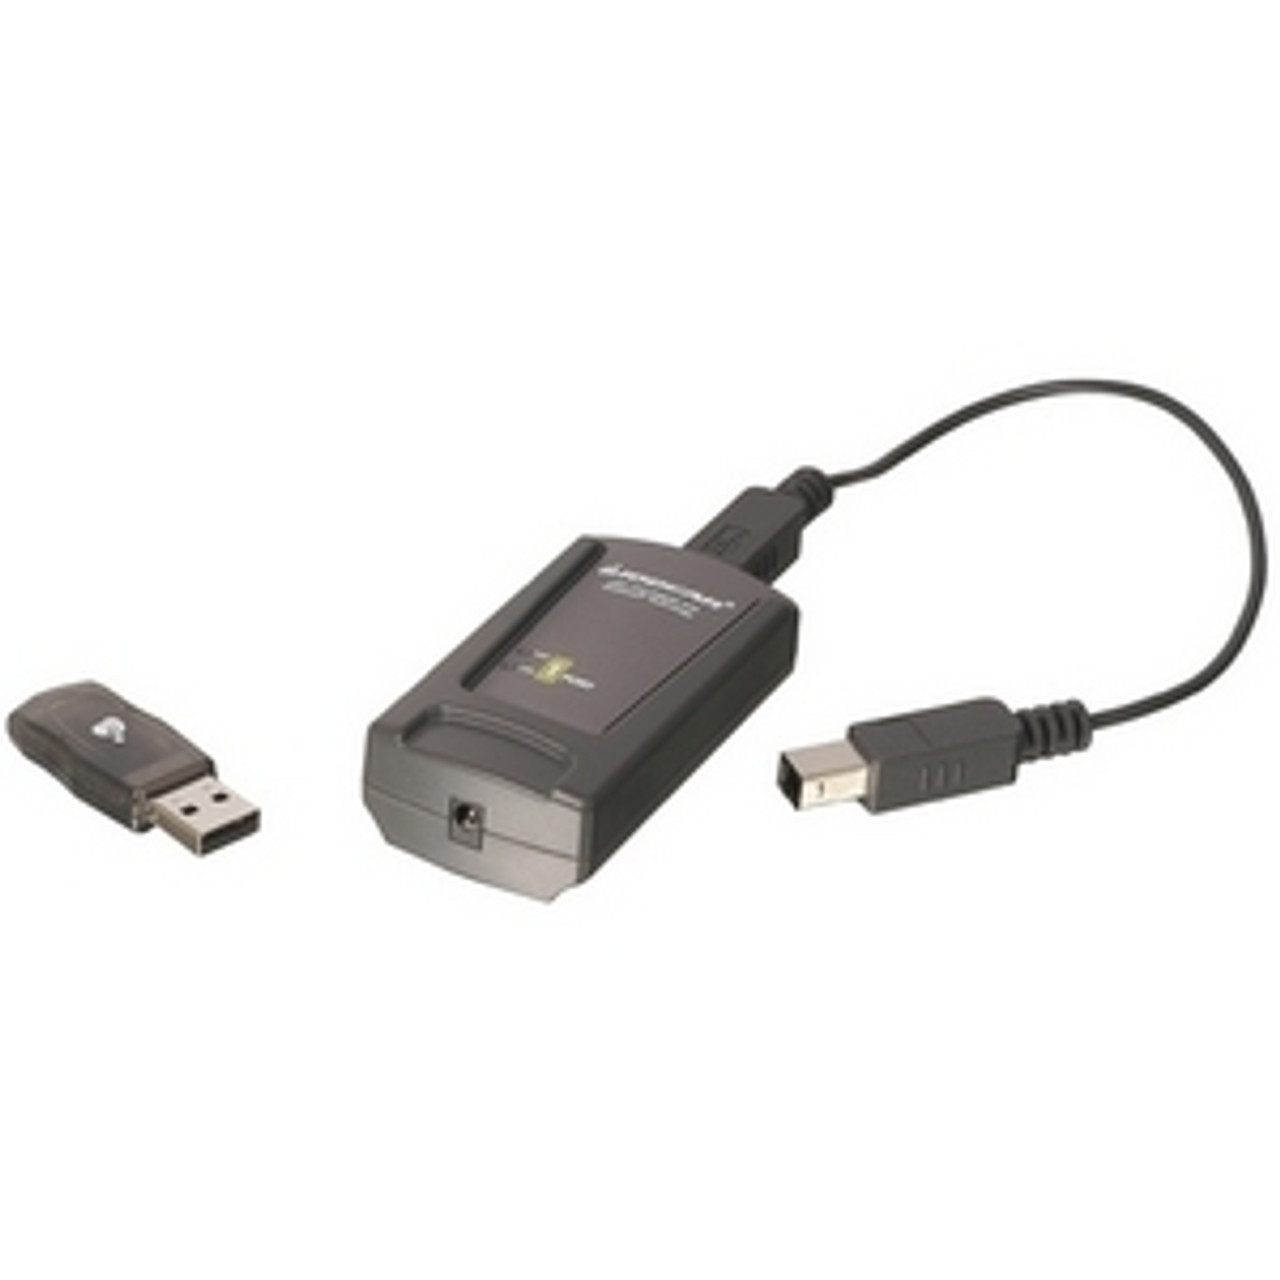 GBP201W4 IOGEAR GBP201 Bluetooth USB Print Adapter